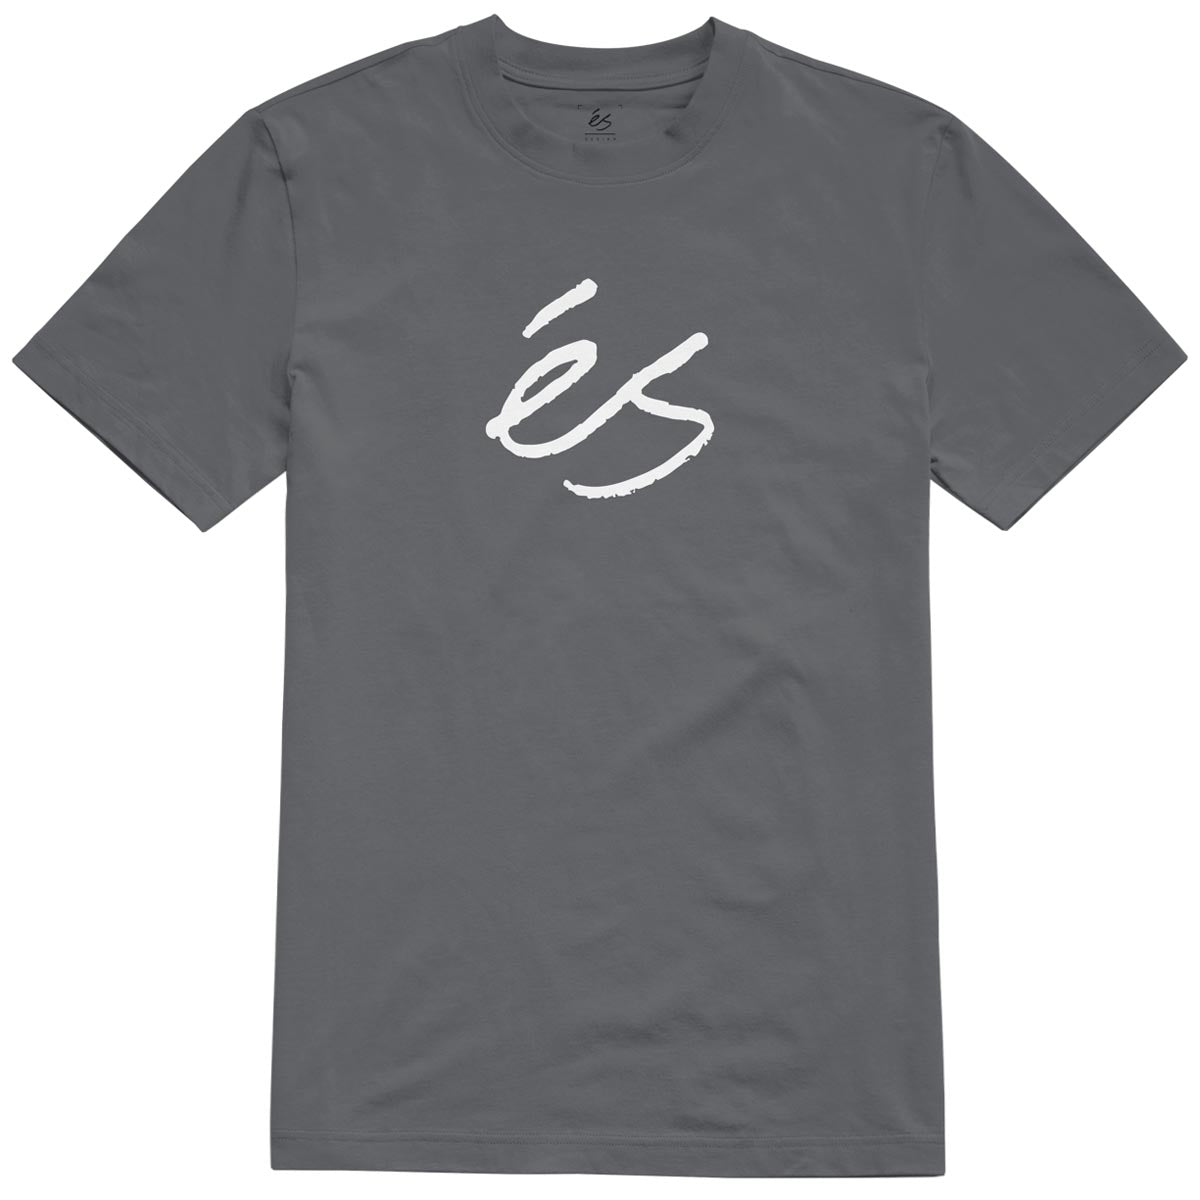 eS Scrip Mid T-Shirt - Charcoal image 1